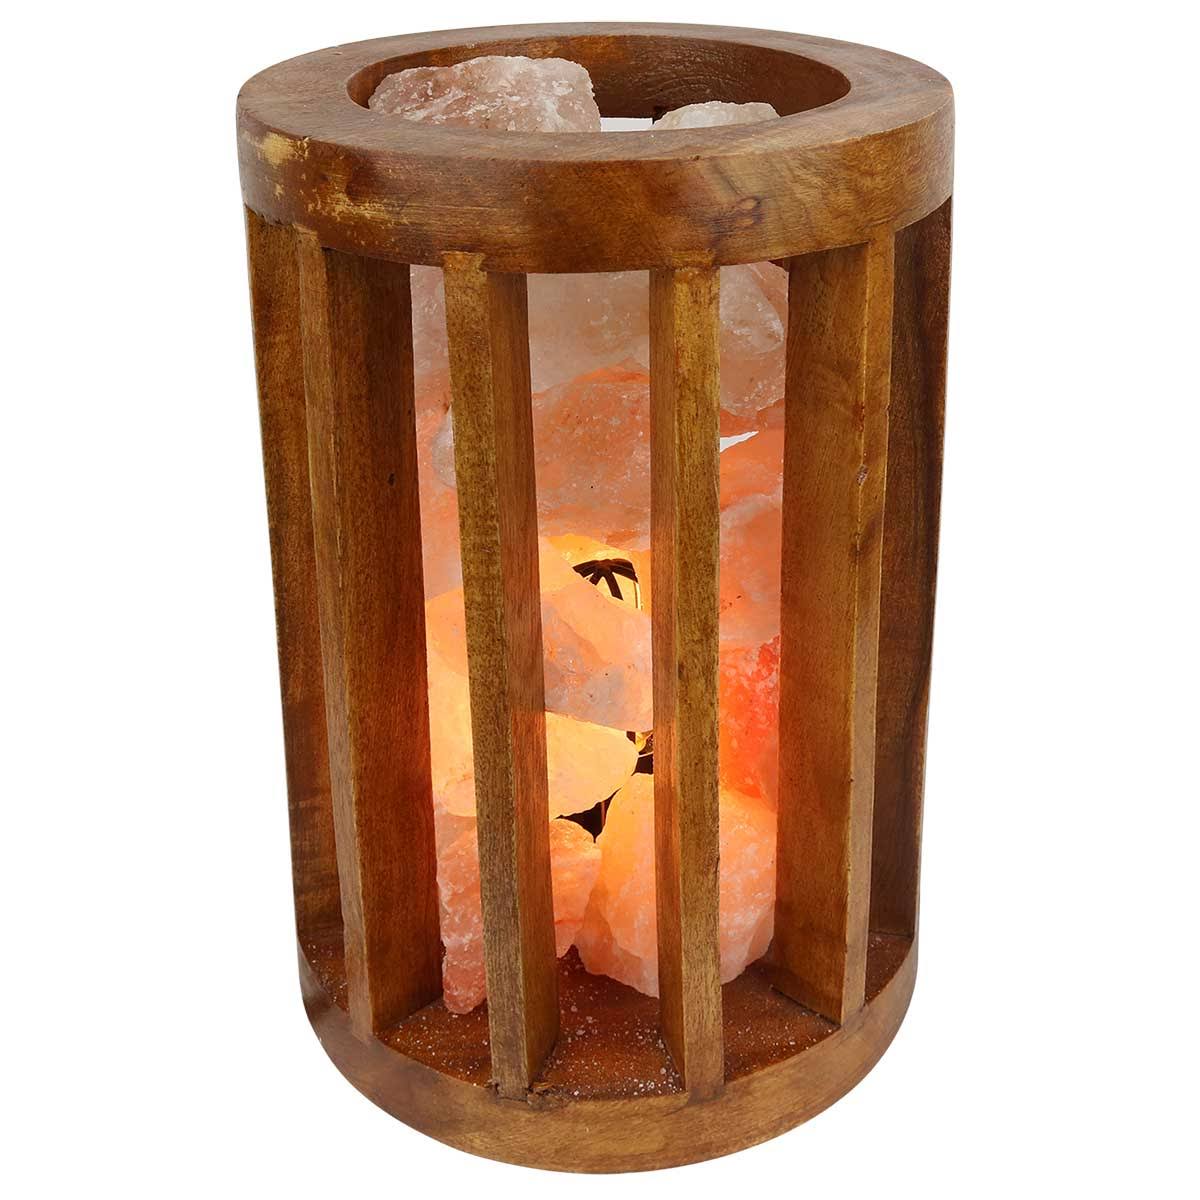 Relaxus Himalayan Salt Lamp Wooden Cylinder Basket